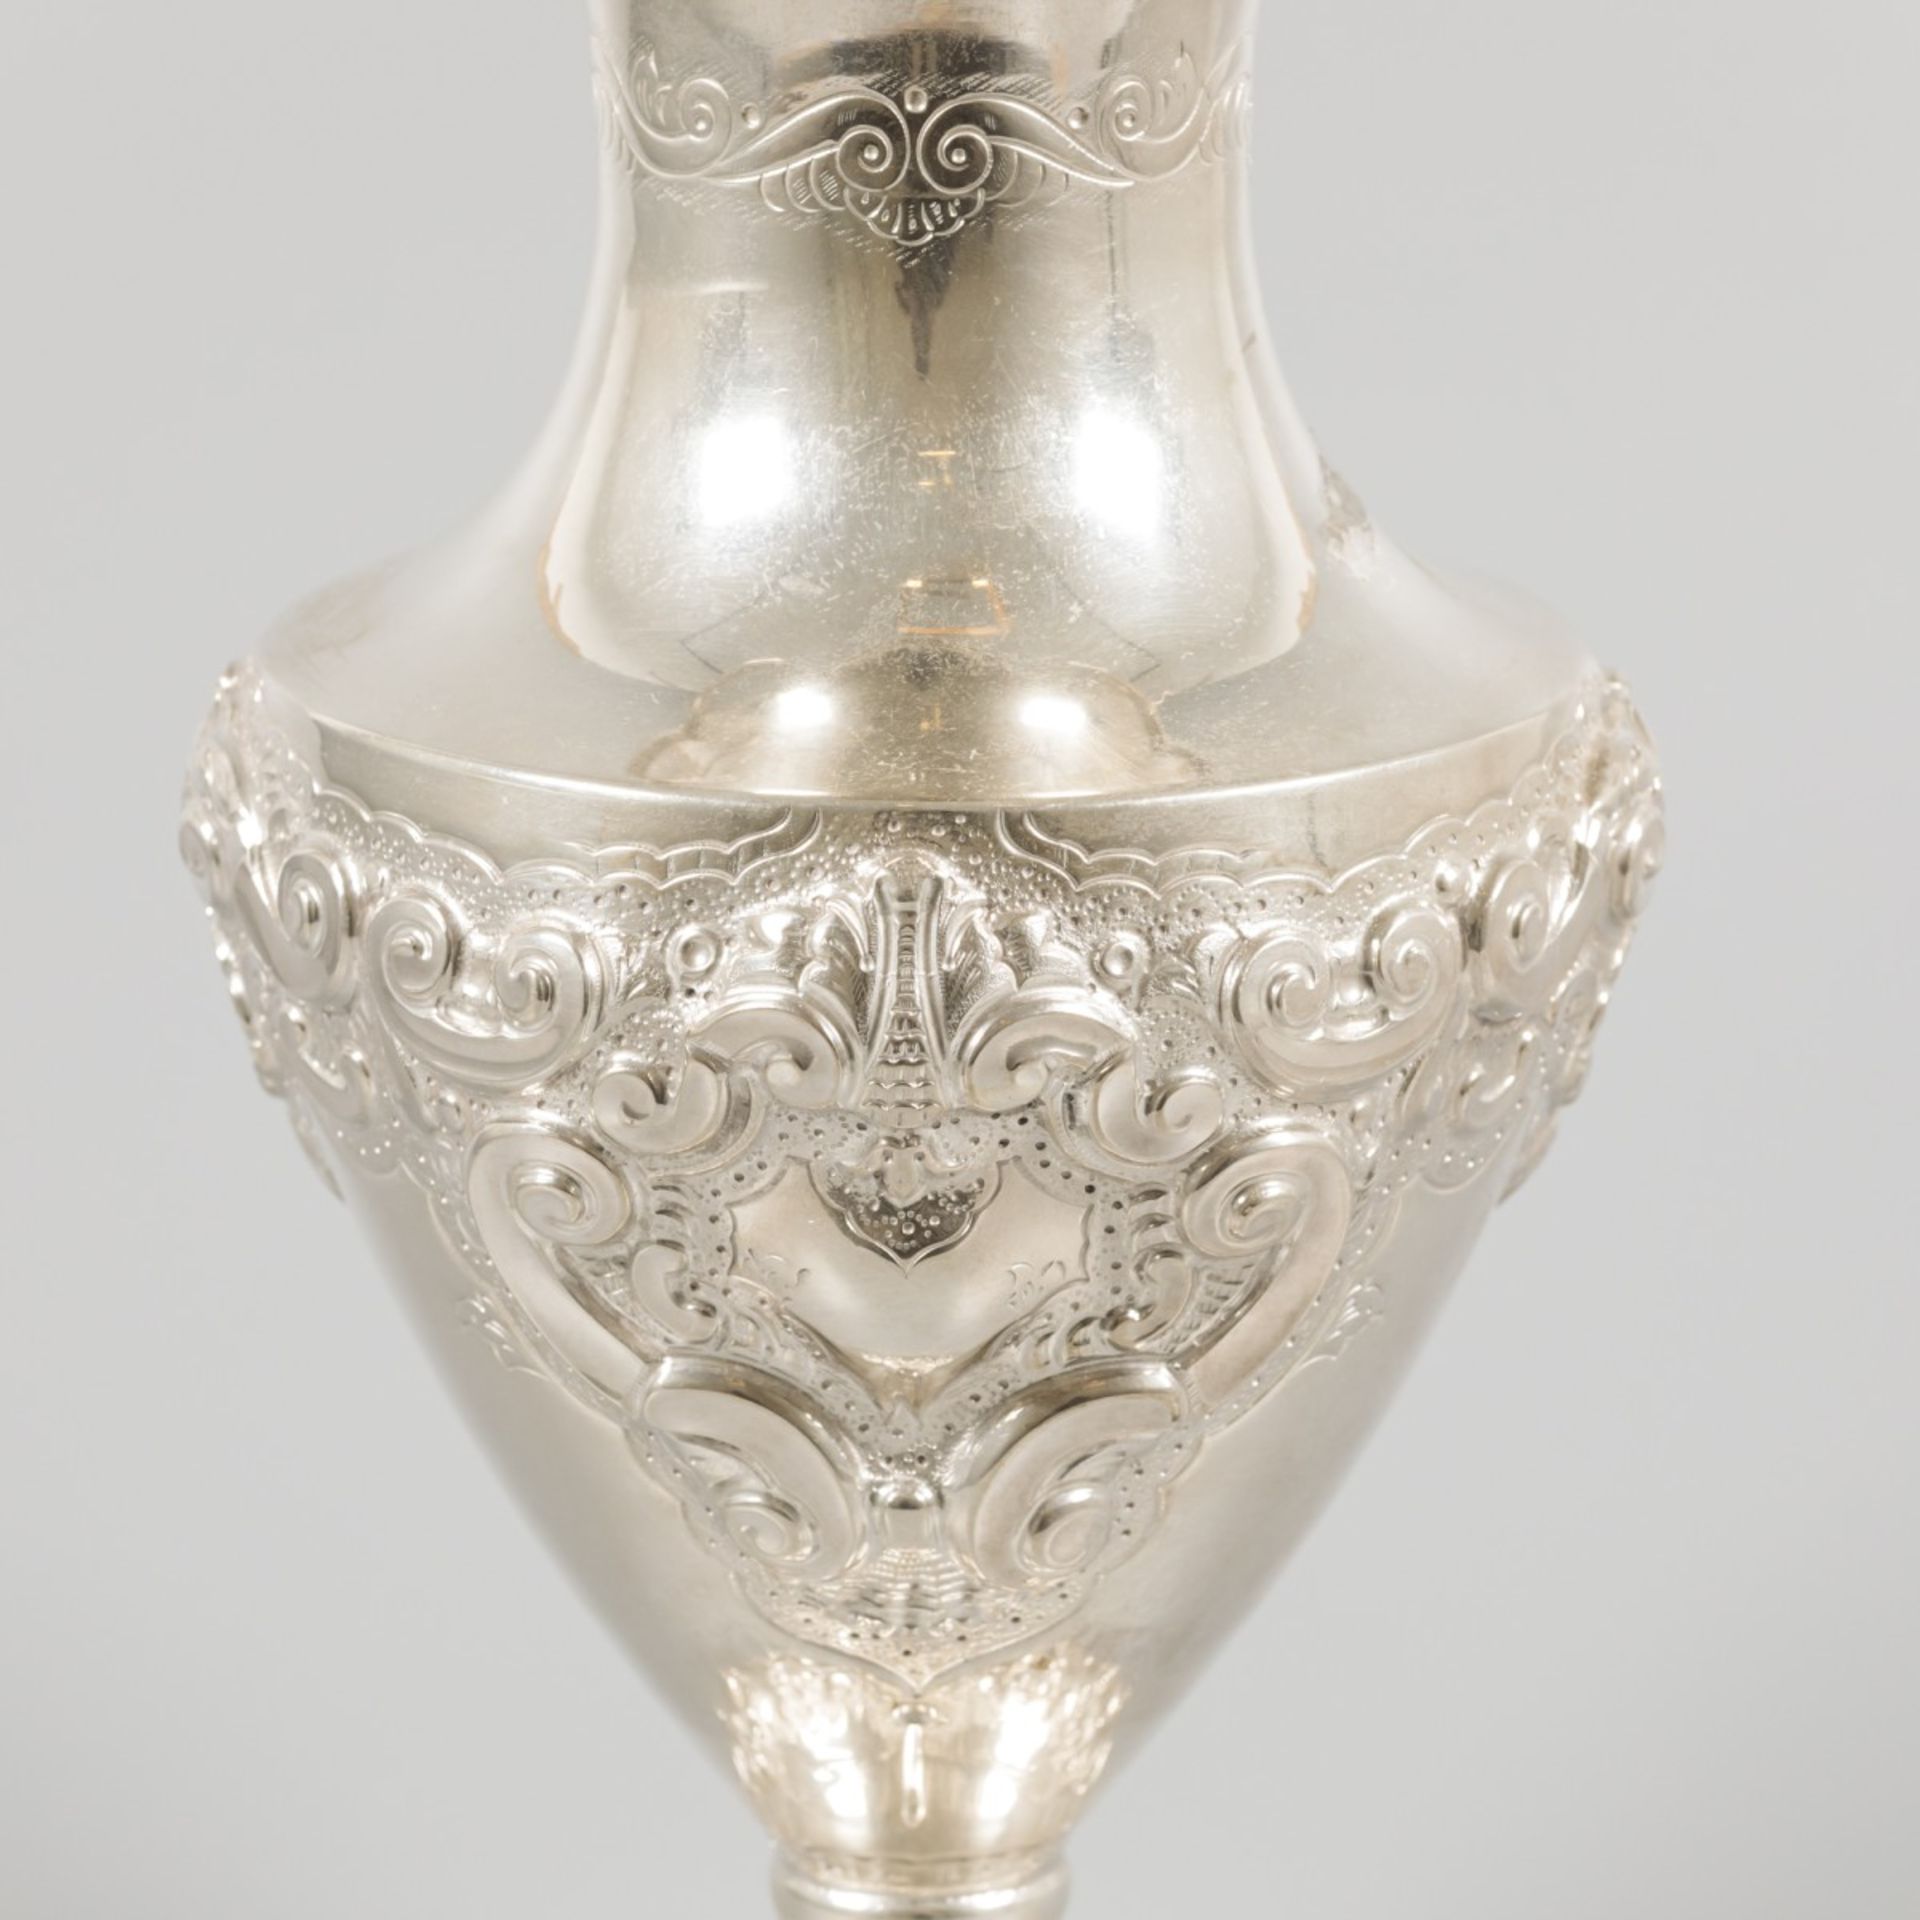 Flower vase silver. - Image 4 of 6